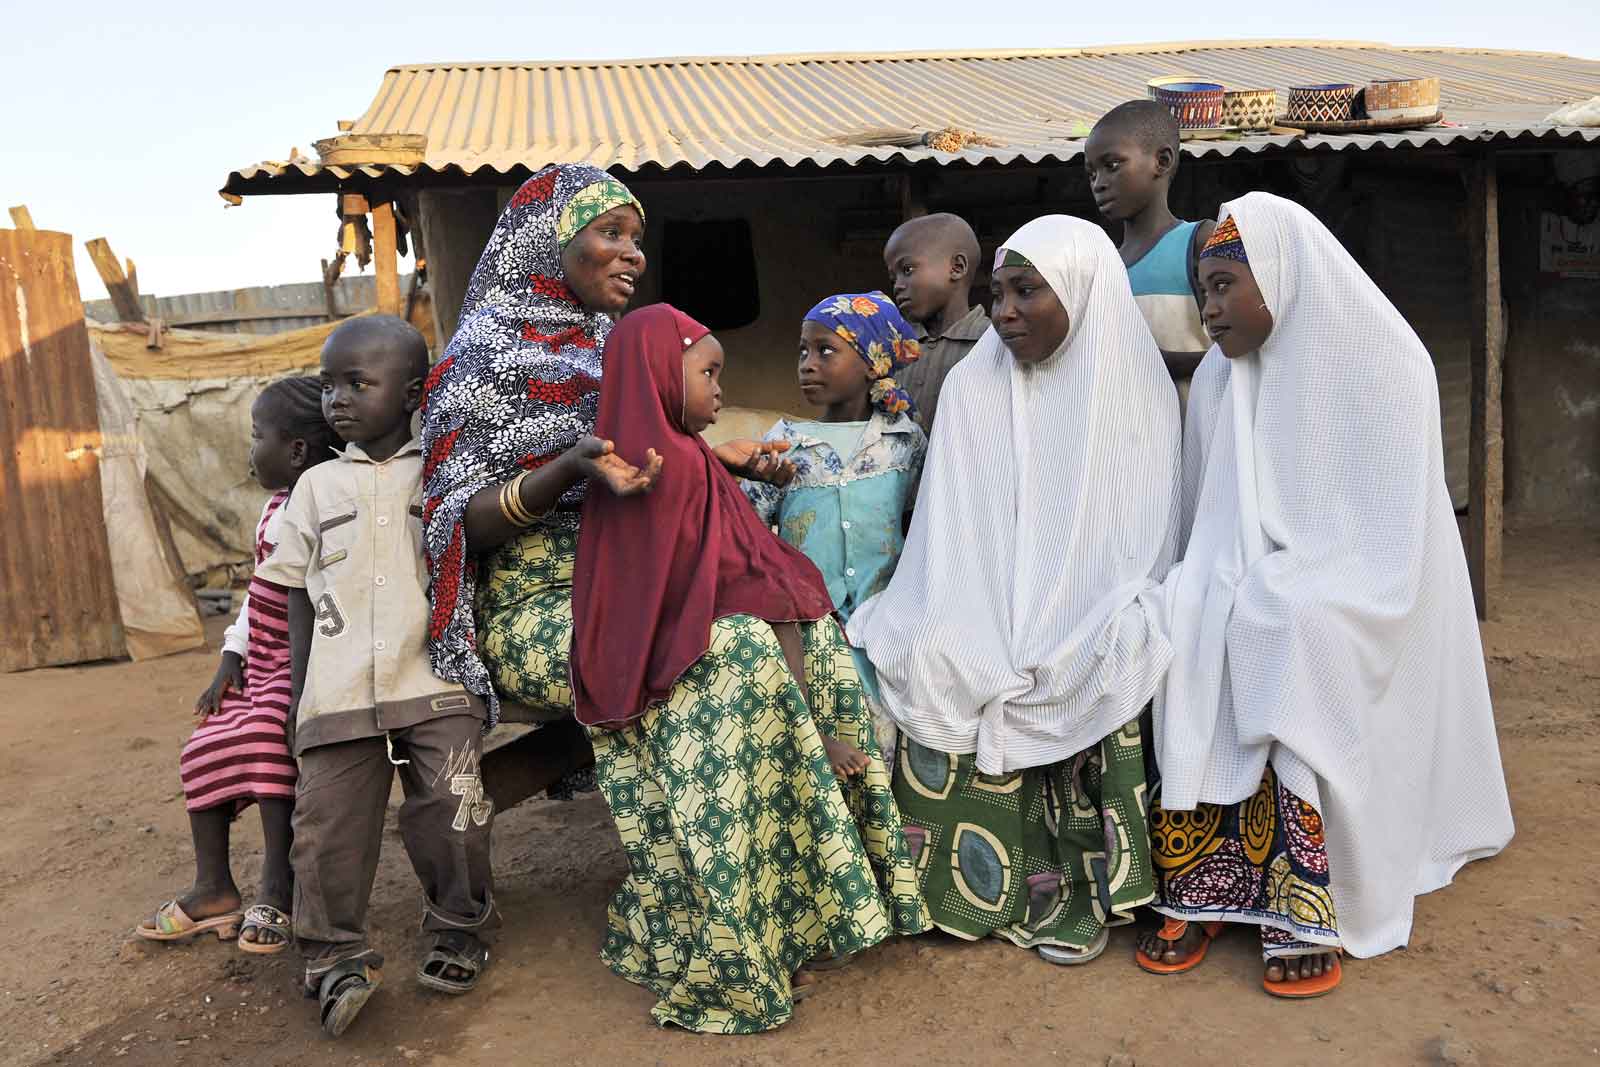   Maryam Salihu Maaji (à gauche) qui joue un rôle influent dans la communauté et qui vit à Damangaza Angwahausa, à la périphérie d’Abuja, aide à coordonner les activités destinées à élargir la couverture vaccinale. Ici elle parle de vaccination et de problèmes de santé avec les mères de la région.